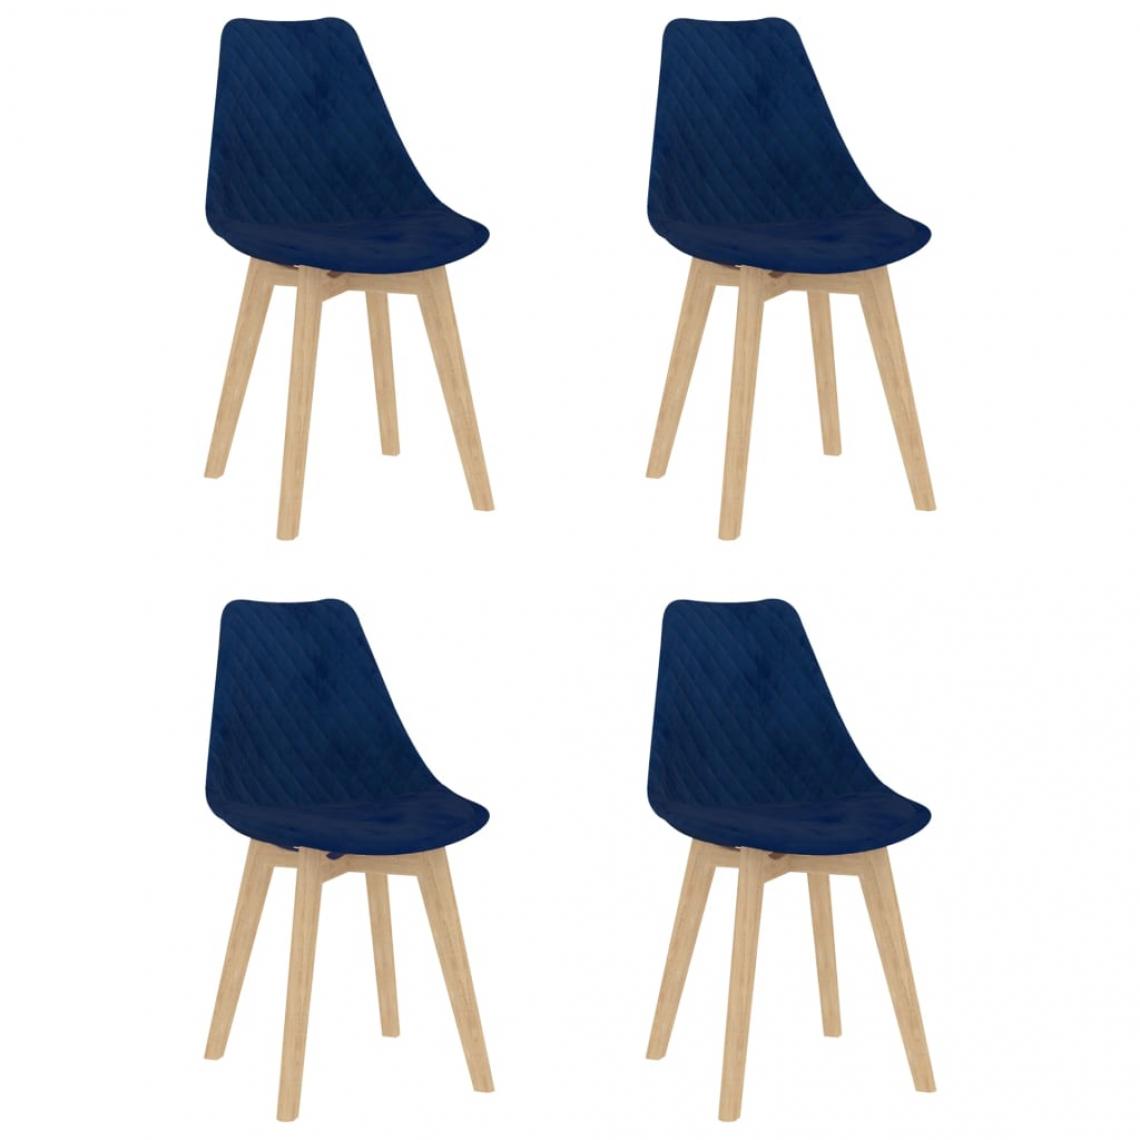 Decoshop26 - Lot de 4 chaises de salle à manger cuisine design moderne velours bleu CDS021308 - Chaises